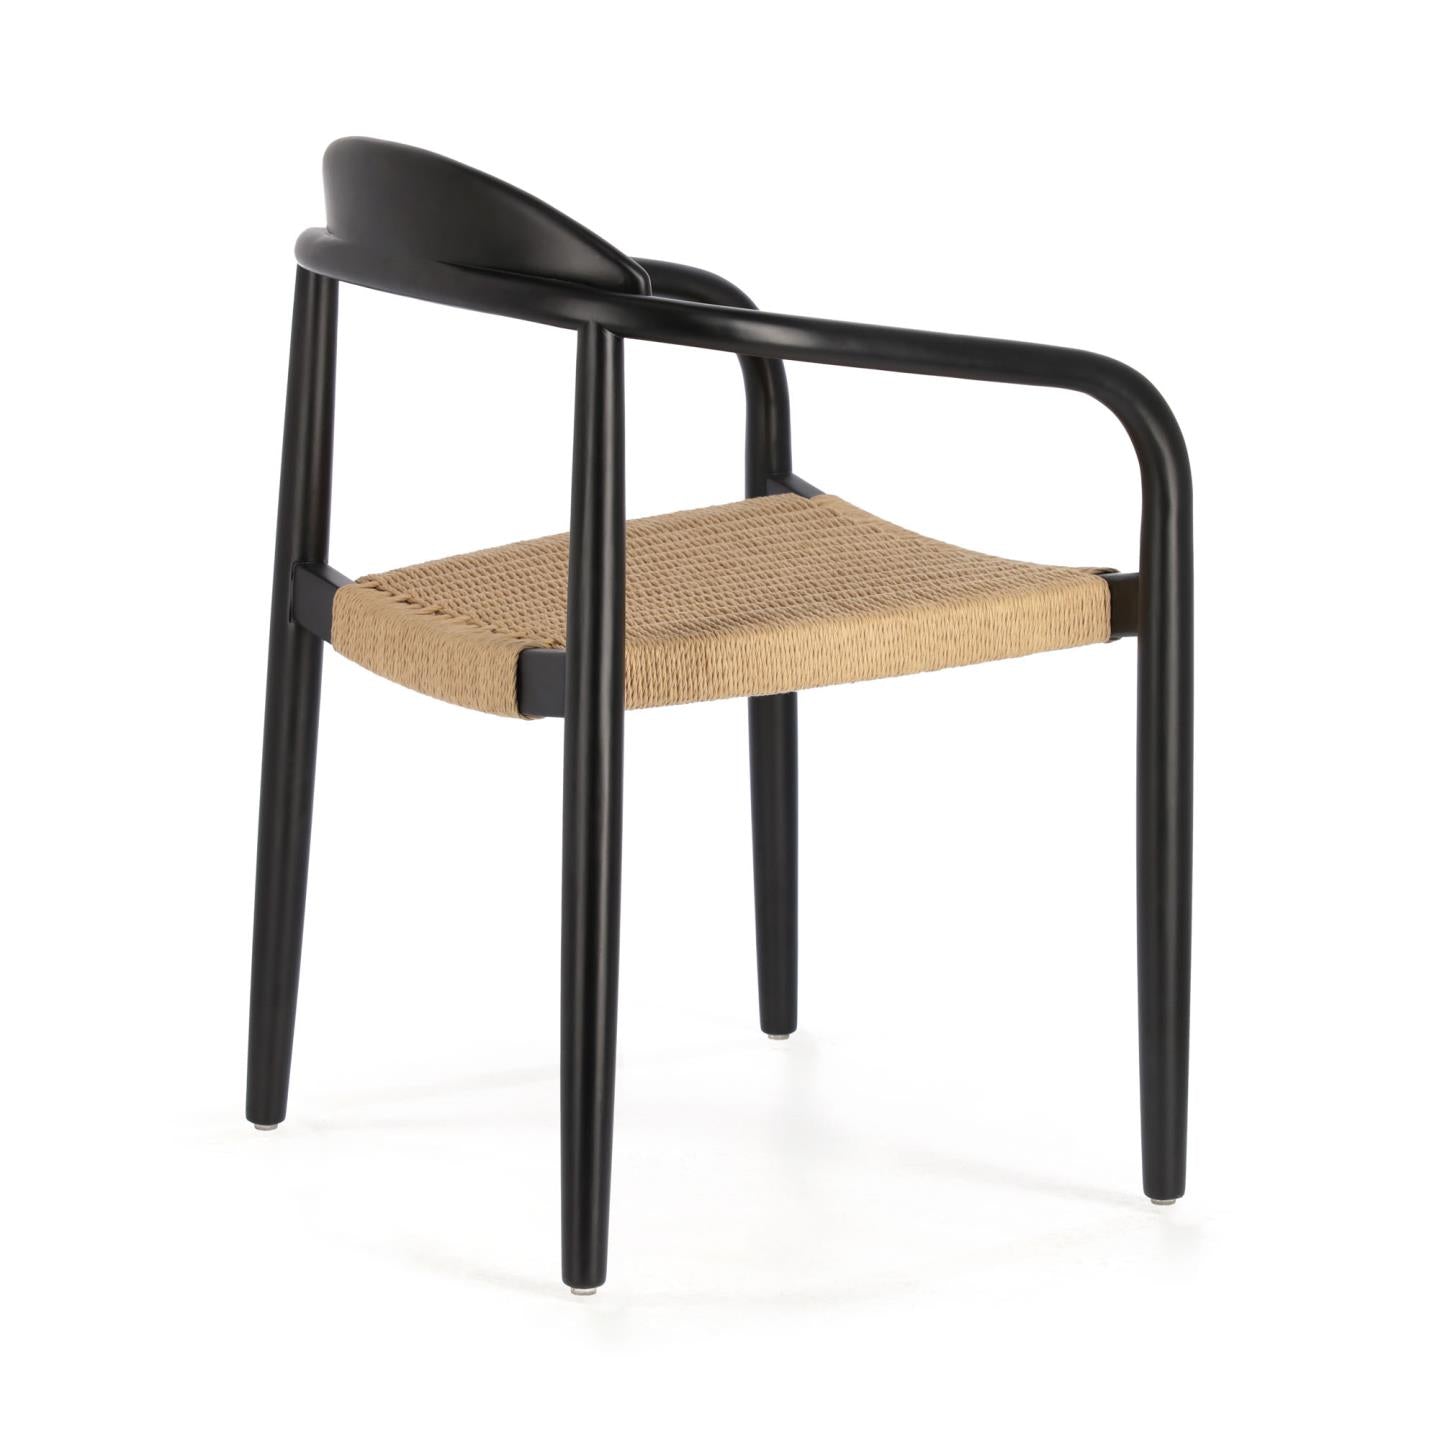 Nina egymásba rakható szék tömör akácfából, fekete kivitelben, bézs színű üléssel